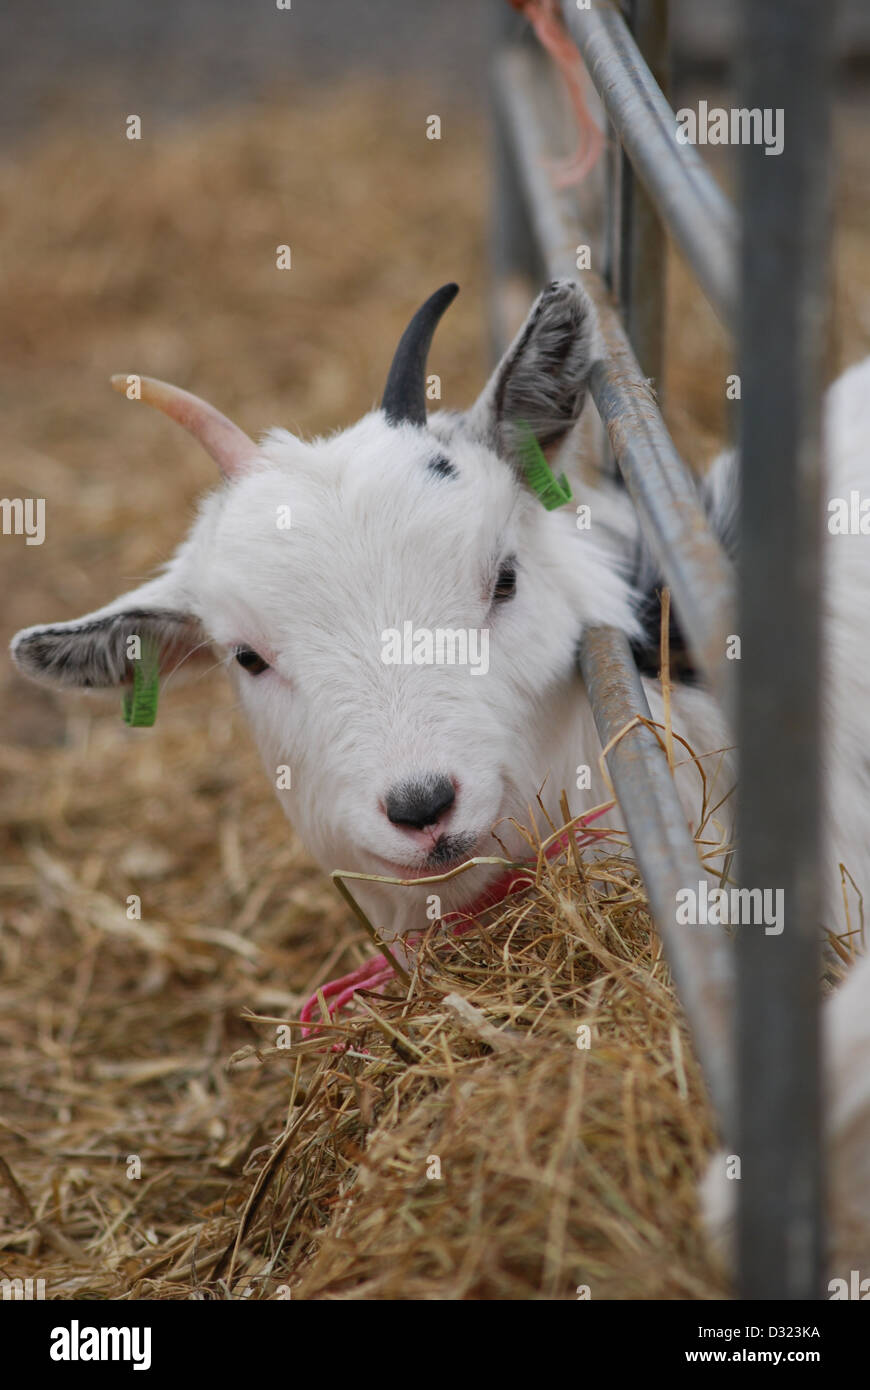 Une chèvre curieux regardant la caméra dans un enclos plein d'animaux dans un zoo pour enfants du marché ou à la ferme avec tagged ears Banque D'Images